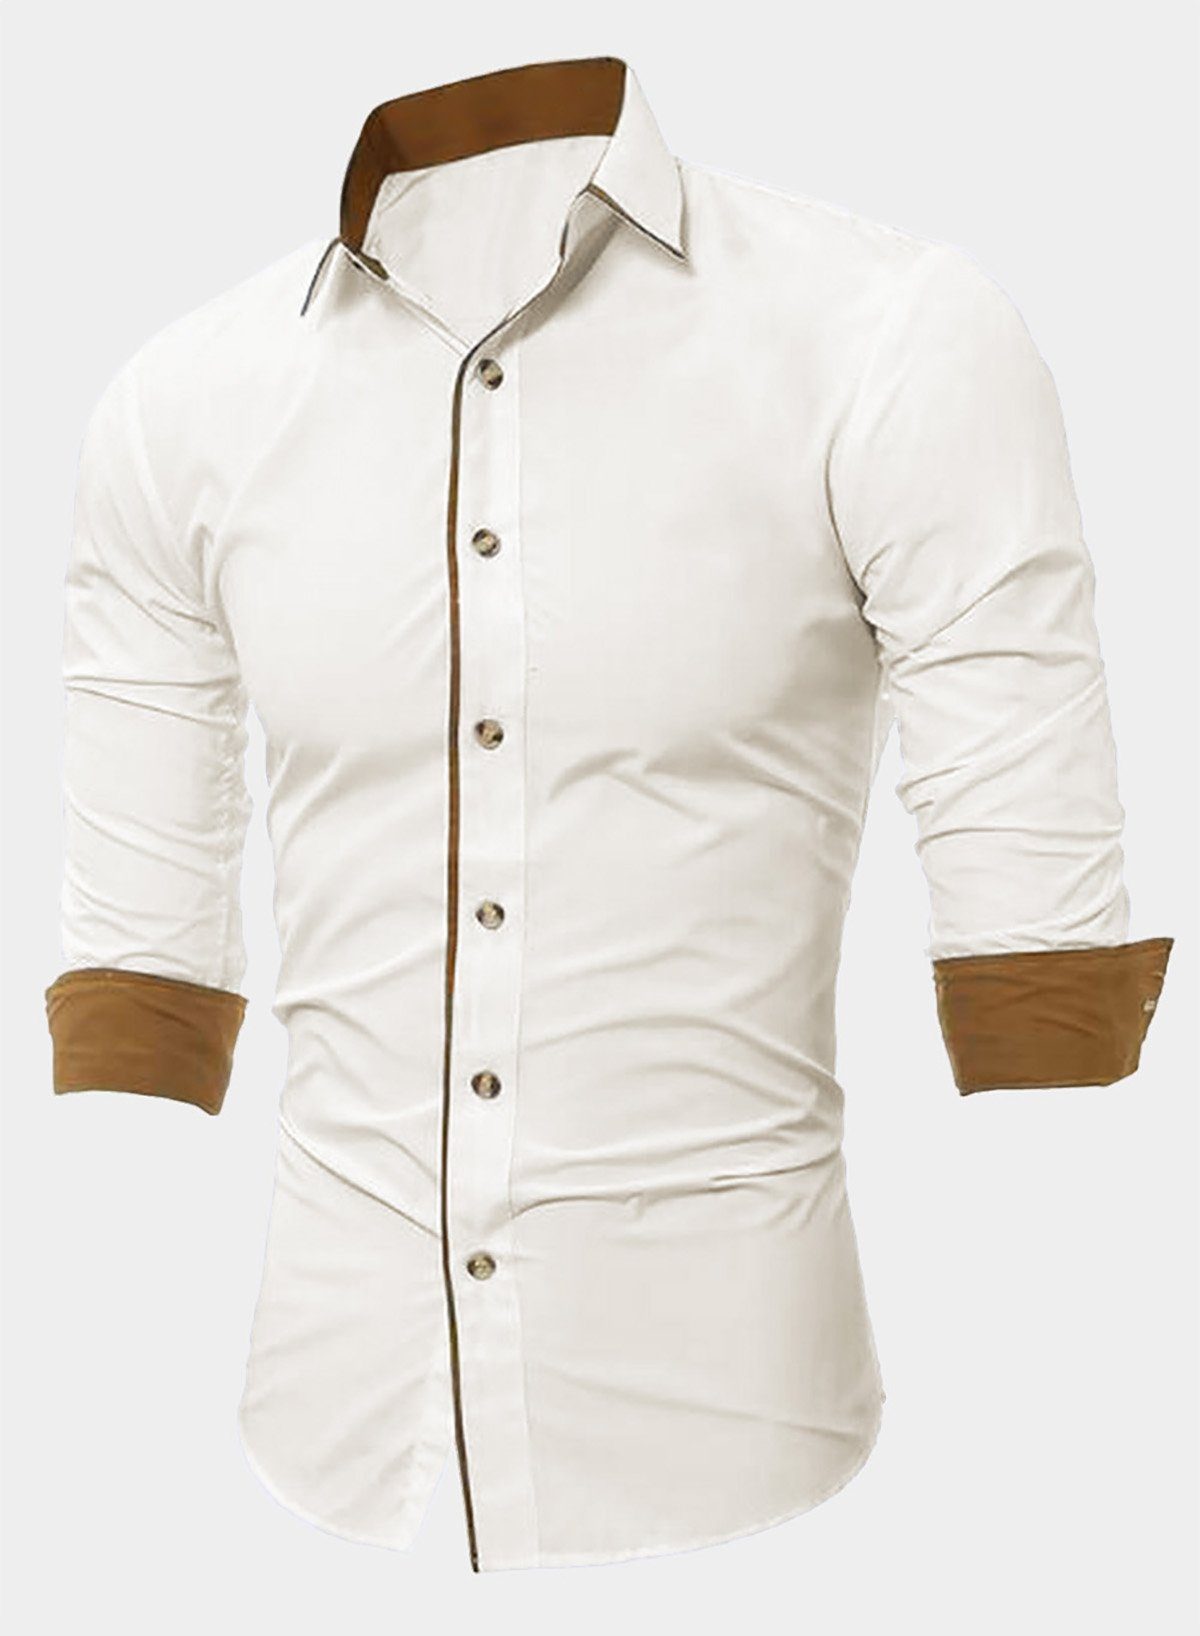 JMIERR Businesshemd Herren Hemd Langarm Business Hemd Freizeithemd Formelle S-2XL (als Jacke offen oder Hemd zugeknöpft zu tragen)